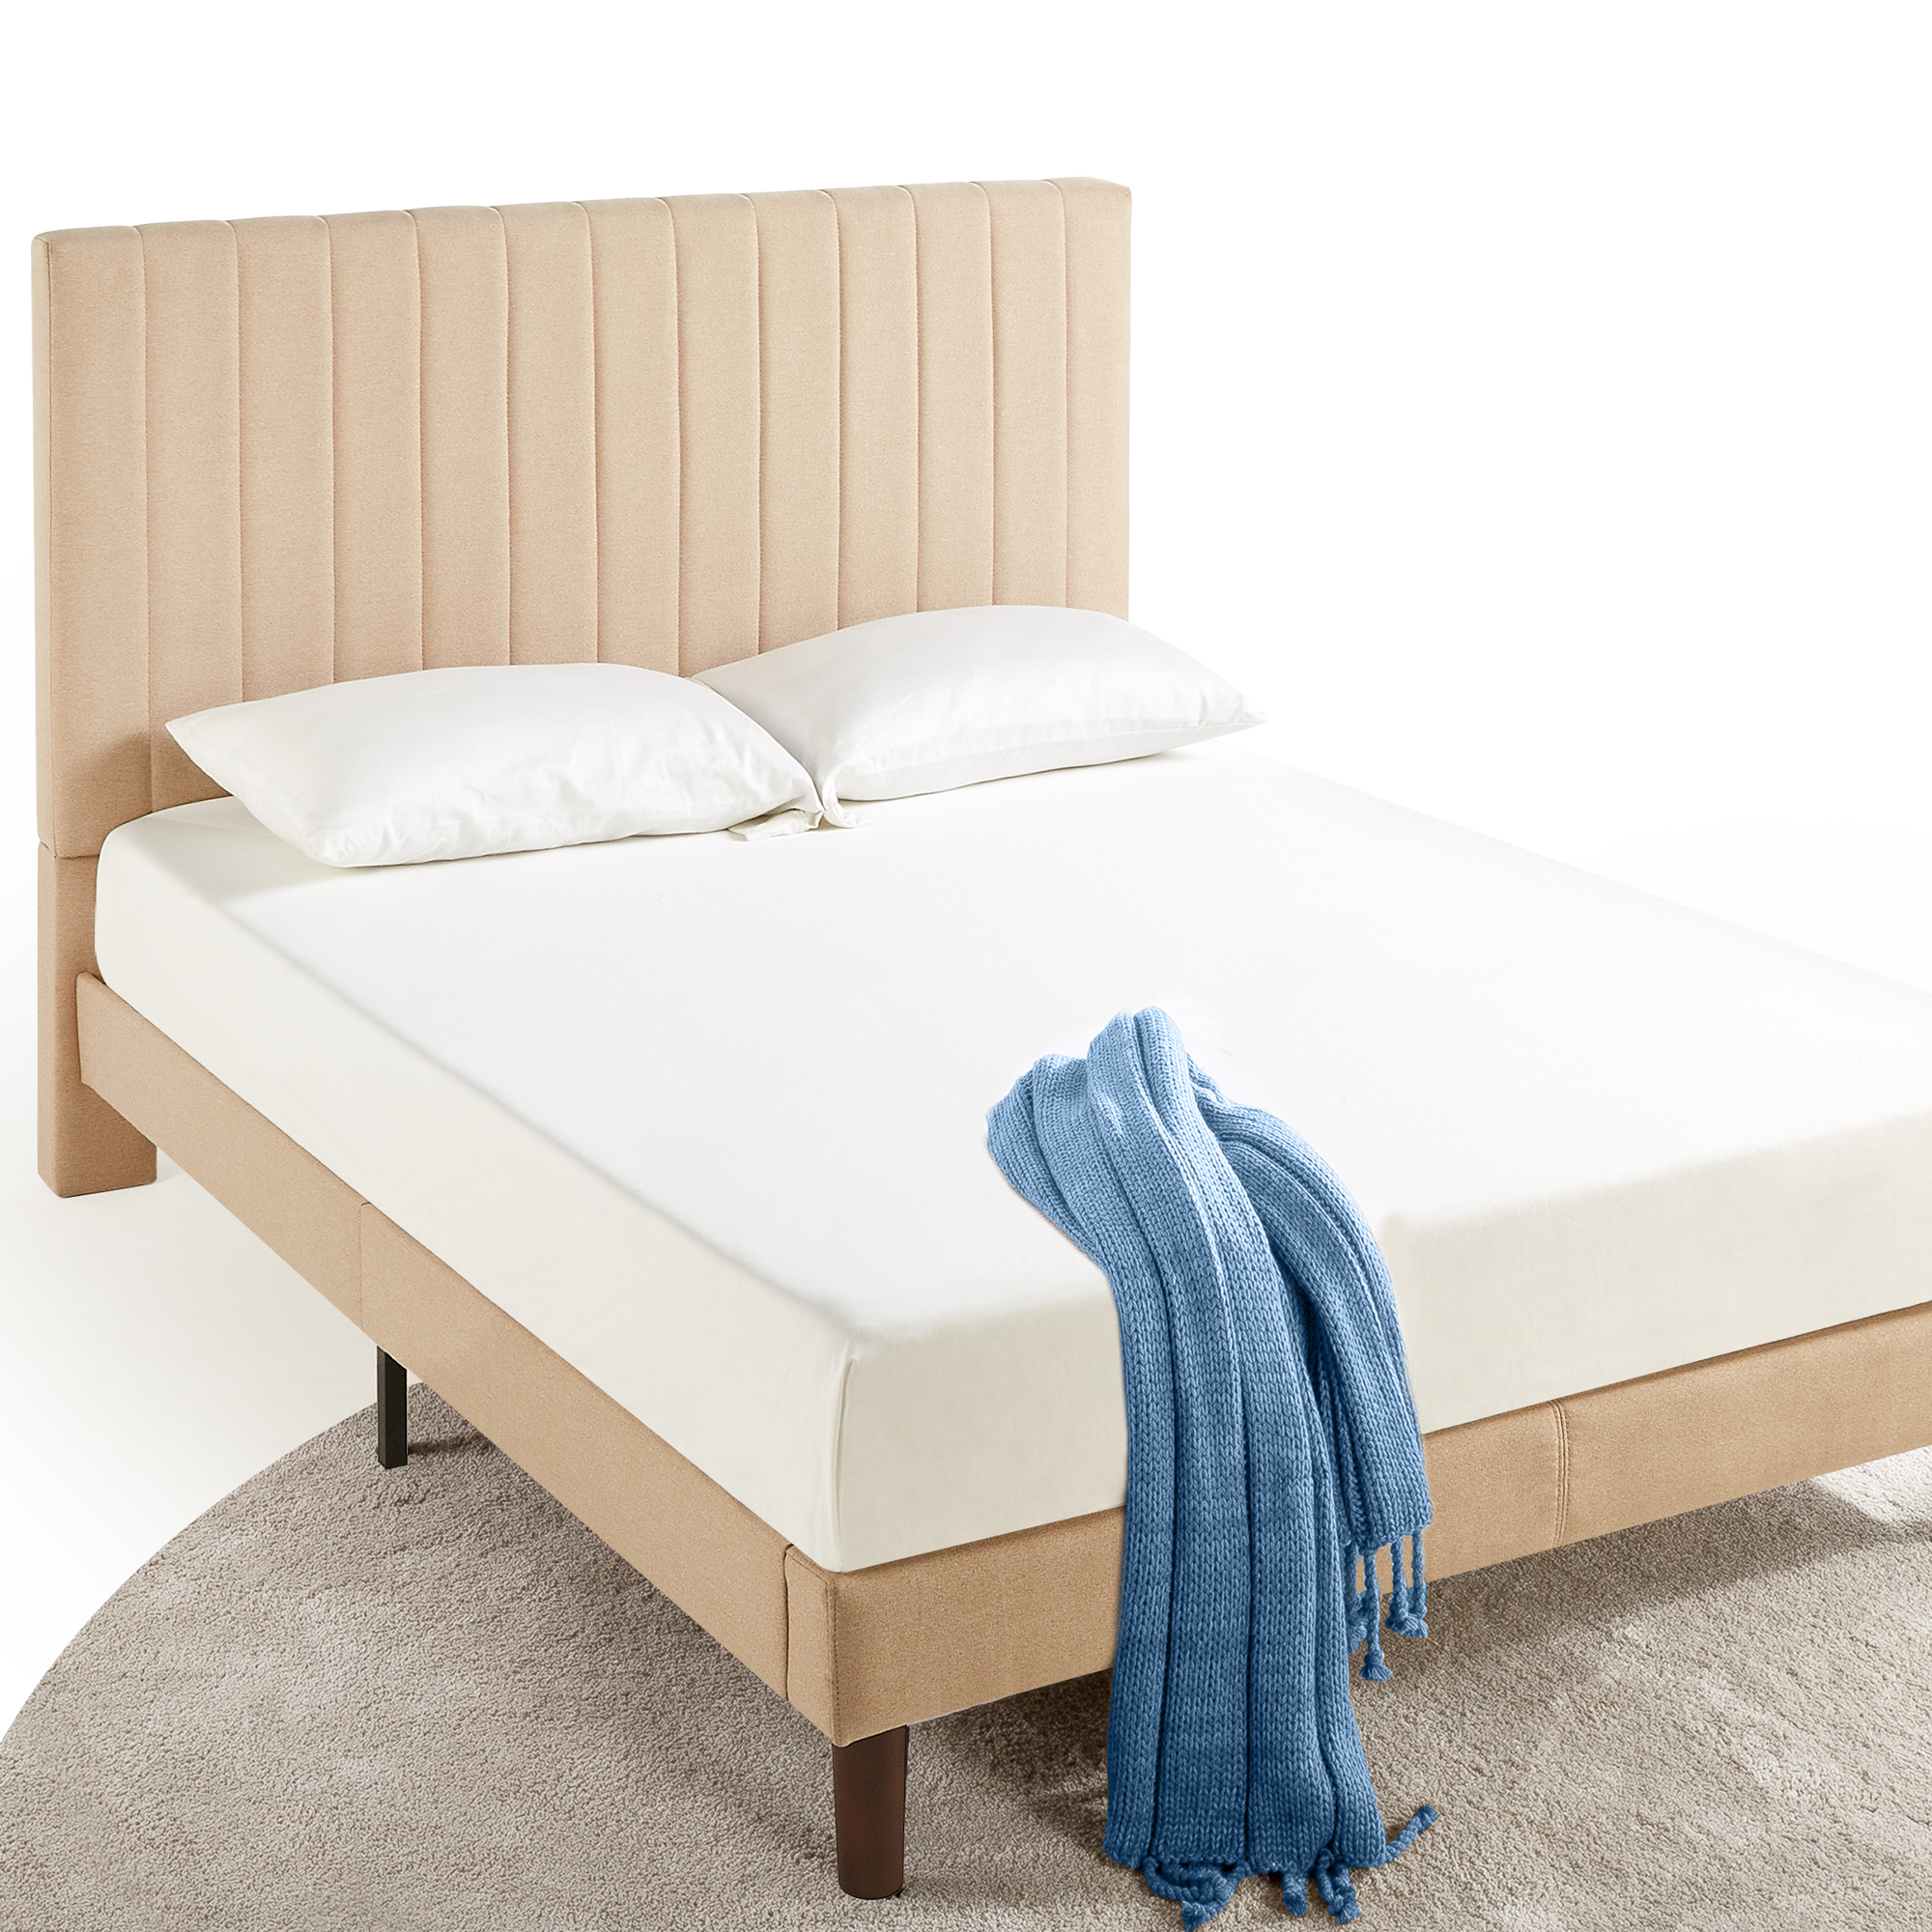 Zinus Debi 51” Upholstered Platform Bed Frame, Full, Beige - image 3 of 9